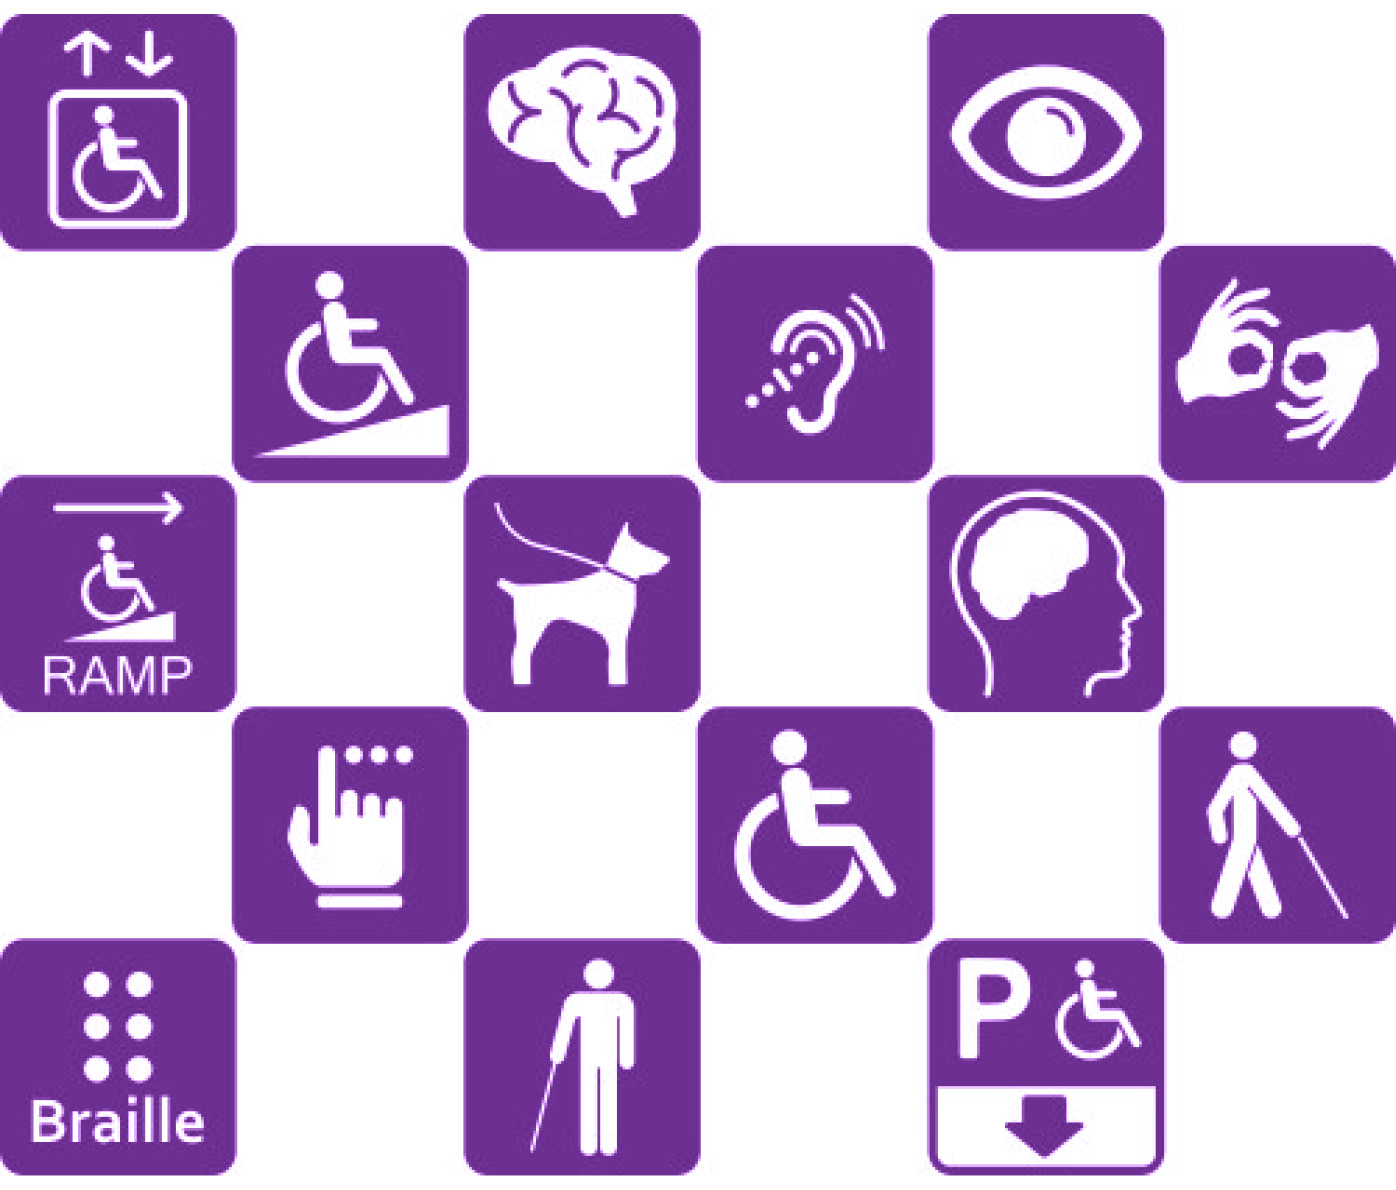 Schachbrettmuster mit Symbolen zum Thema Behinderung